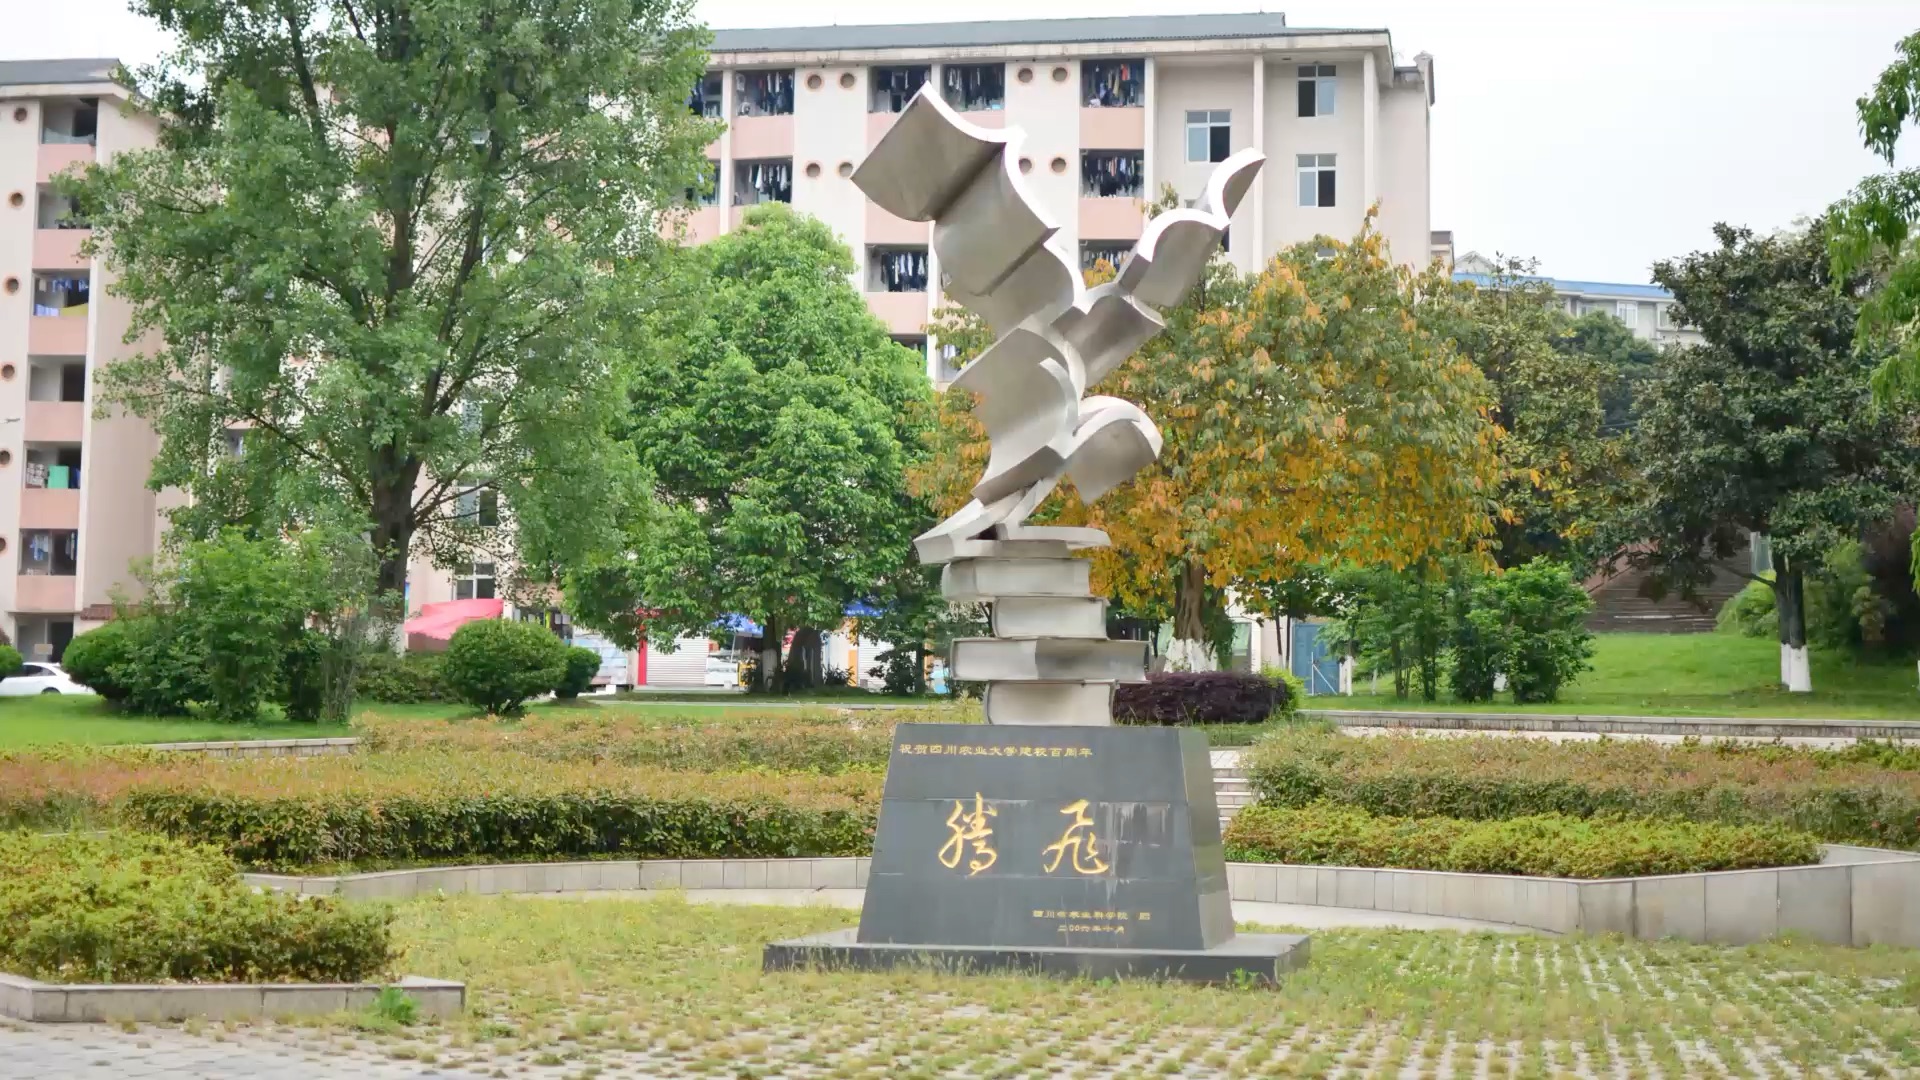 四川农业大学(雅安) 校园风景